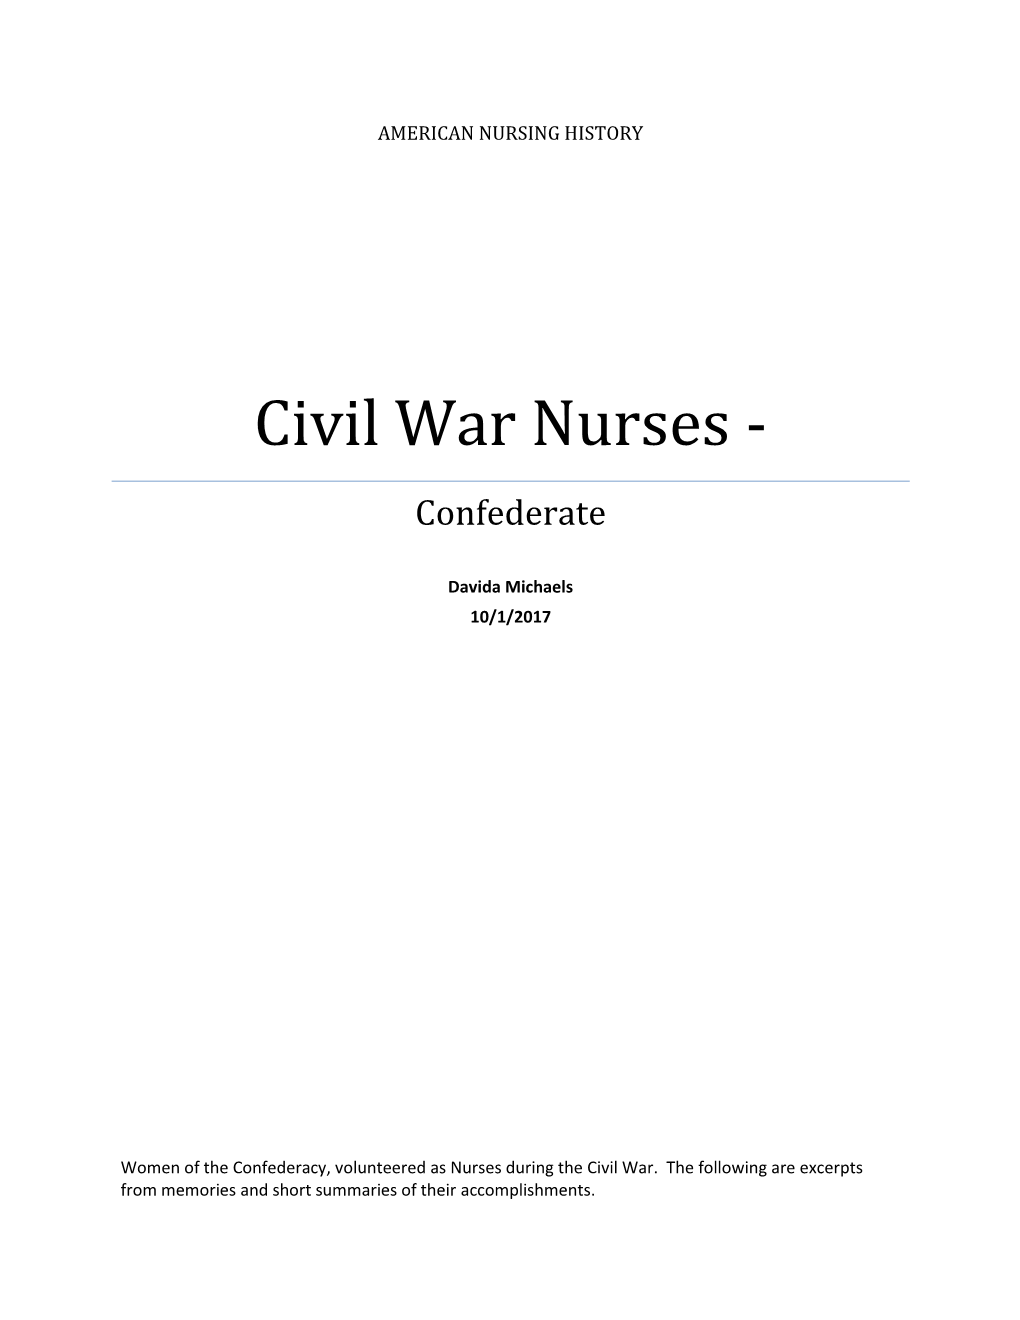 Civil War Nurses - Confederate